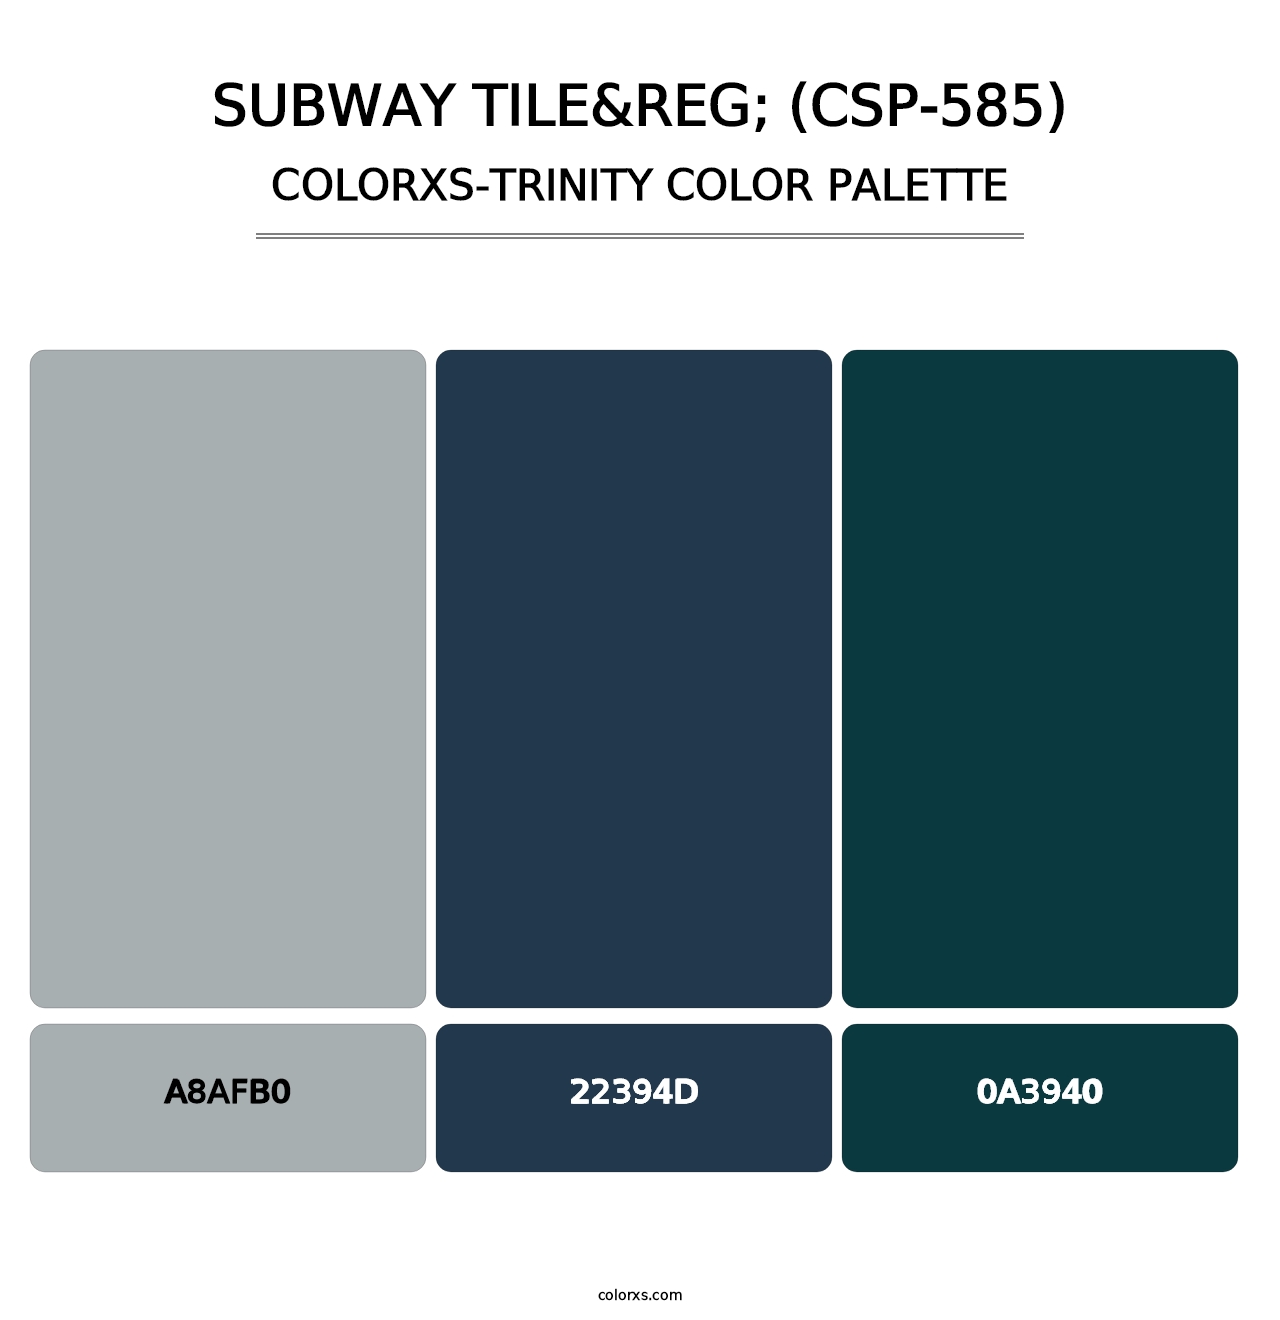 Subway Tile&reg; (CSP-585) - Colorxs Trinity Palette